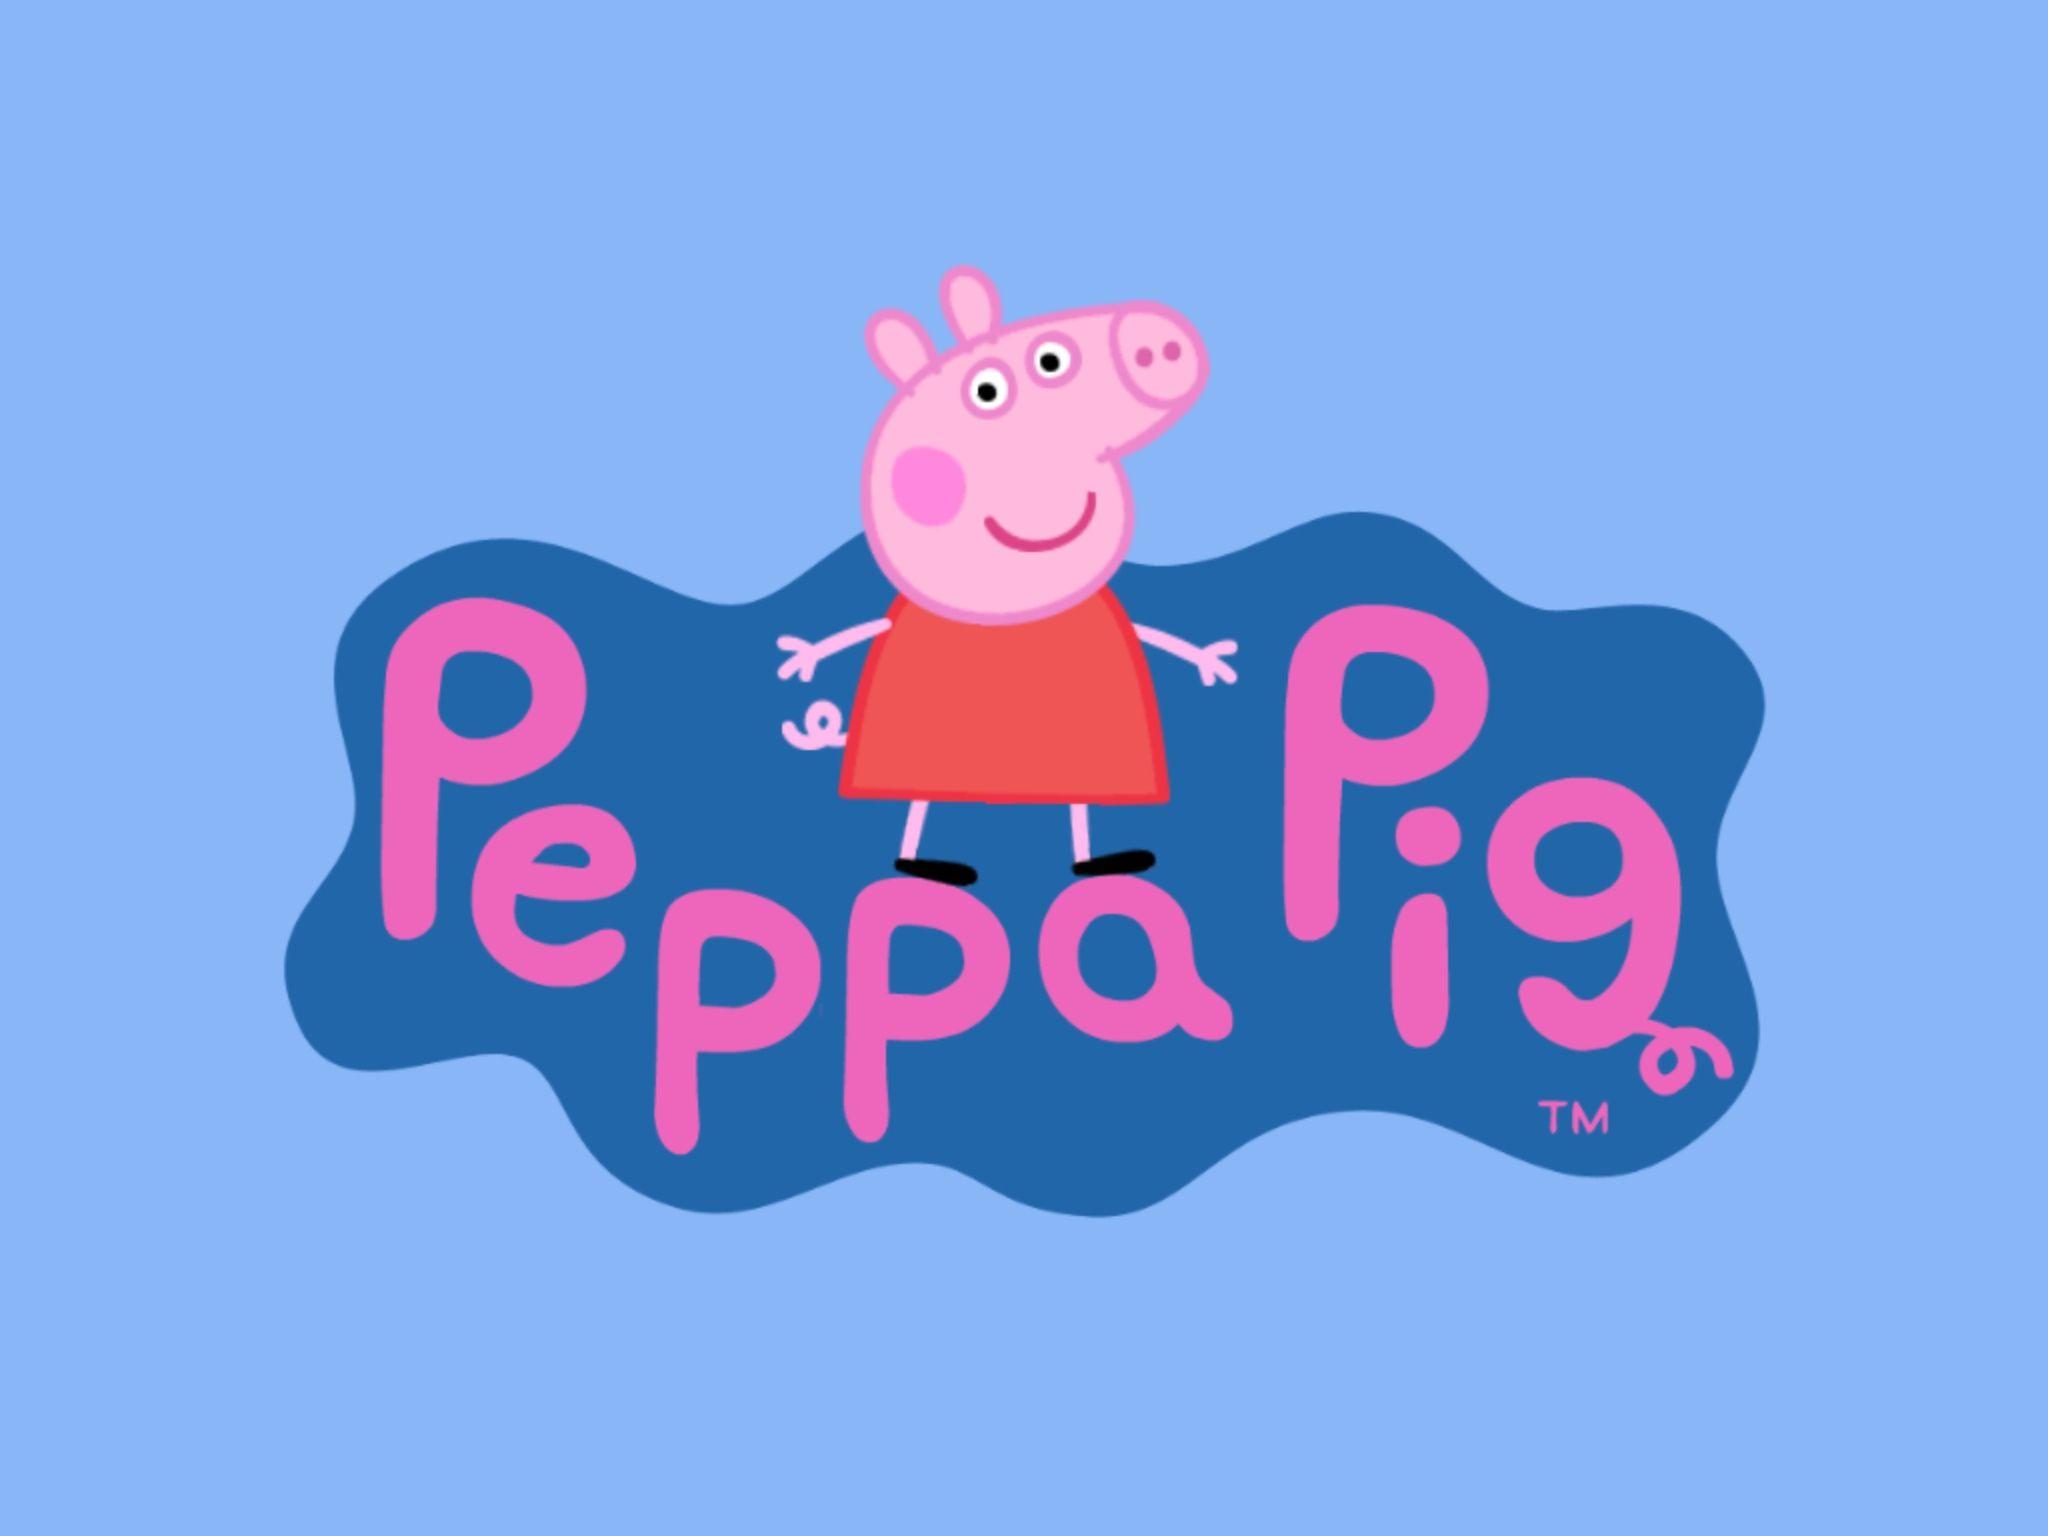 1407x793 Tải xuống miễn phí Hình nền HD của Disney Hình nền Peppa Pig HD [1407x793] cho Máy tính để bàn, Di động & Máy tính bảng của bạn. Khám phá Hình nền Peppa Pig Miễn phí. Hình nền máy tính để bàn của lợn, Hình nền lợn miễn phí, Máy tính hình nền lợn Peppa